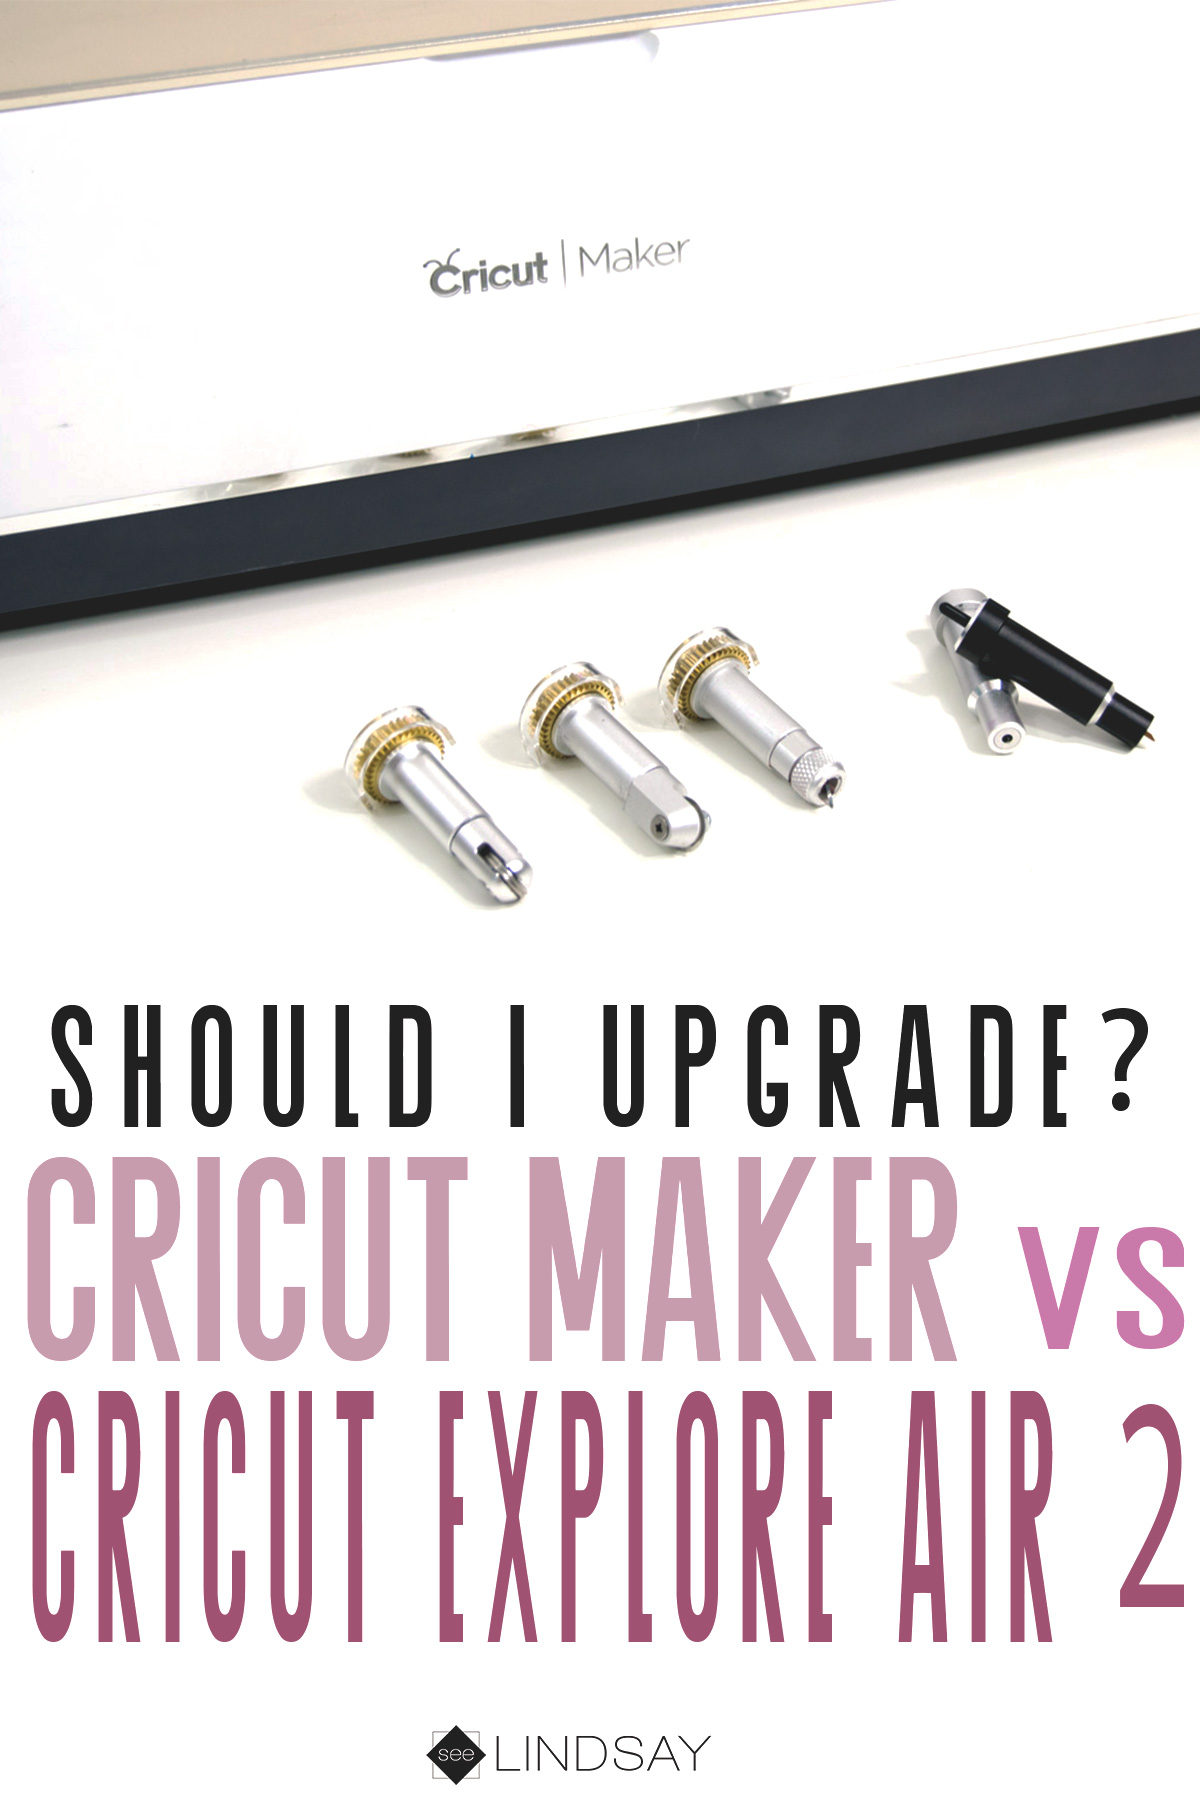 Cricut Maker vs. Cricut Explore Air 2 - Should you upgrade? - seeLINDSAY